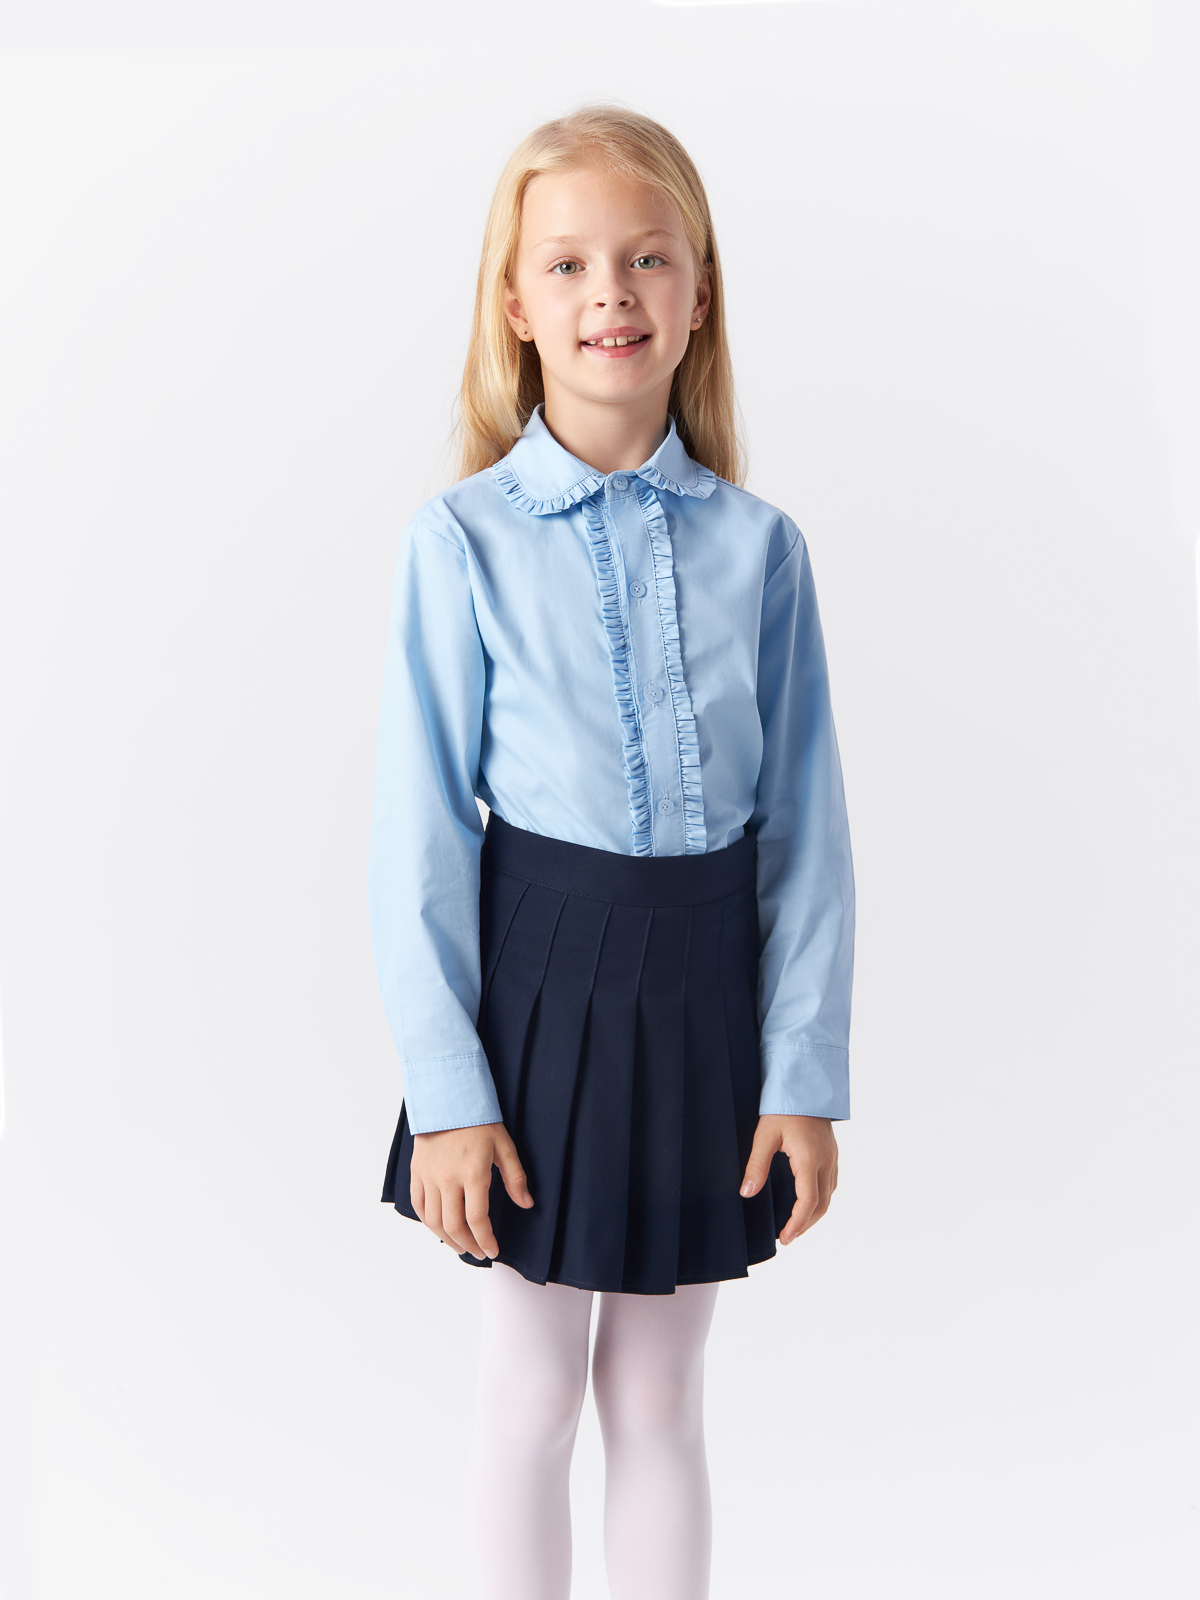 Блузка Yiwu Xflot Supply Chain детская, BS-2blue, размер 150 см блузка трикотажная школьная белая button blue 152